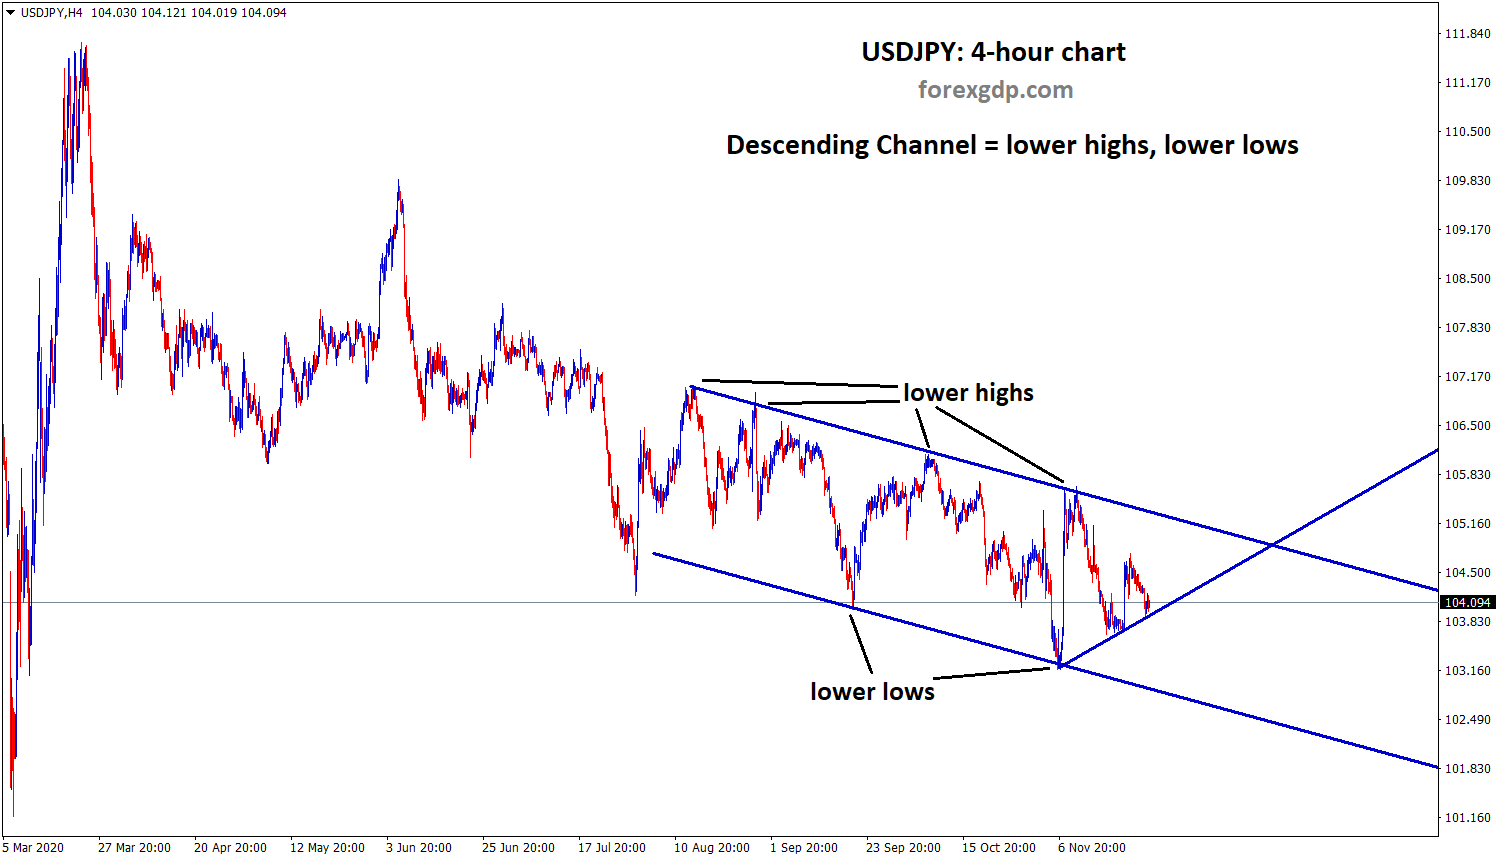 USDJPY moving in a descending channel pattern